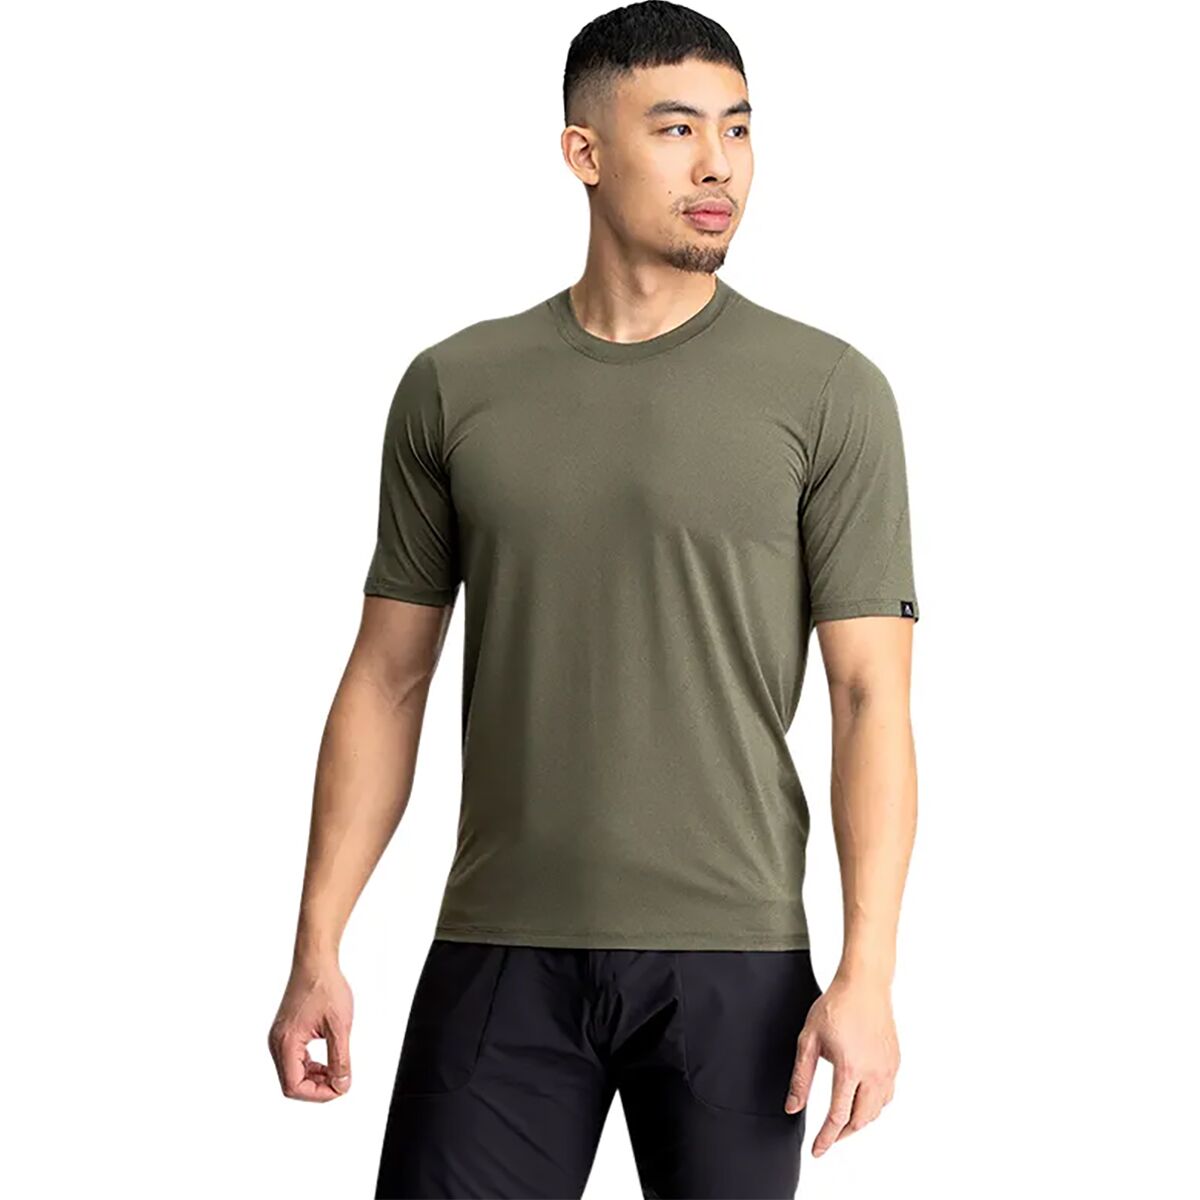 7mesh Industries Sight Shirt Short-Sleeve Jersey - Men's